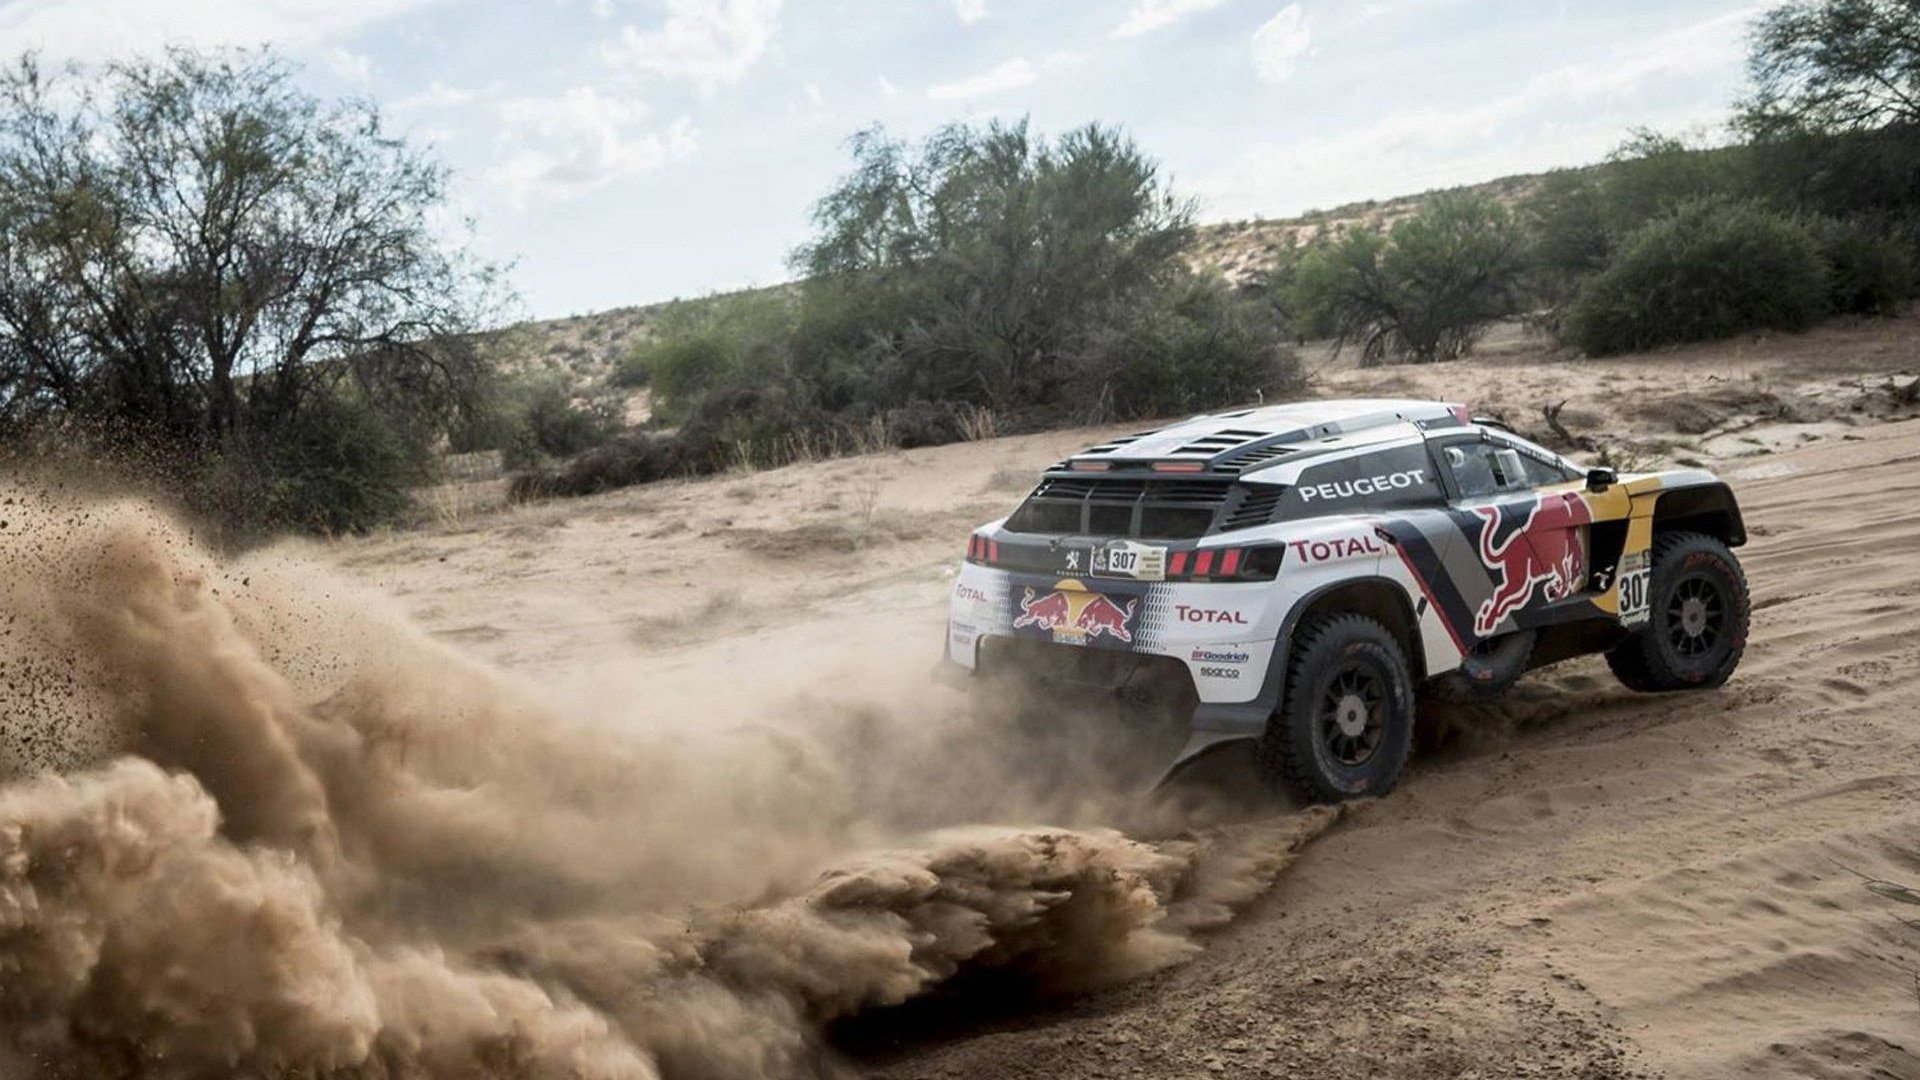 2017 Peugeot 3008 DKR in the Dakar rally